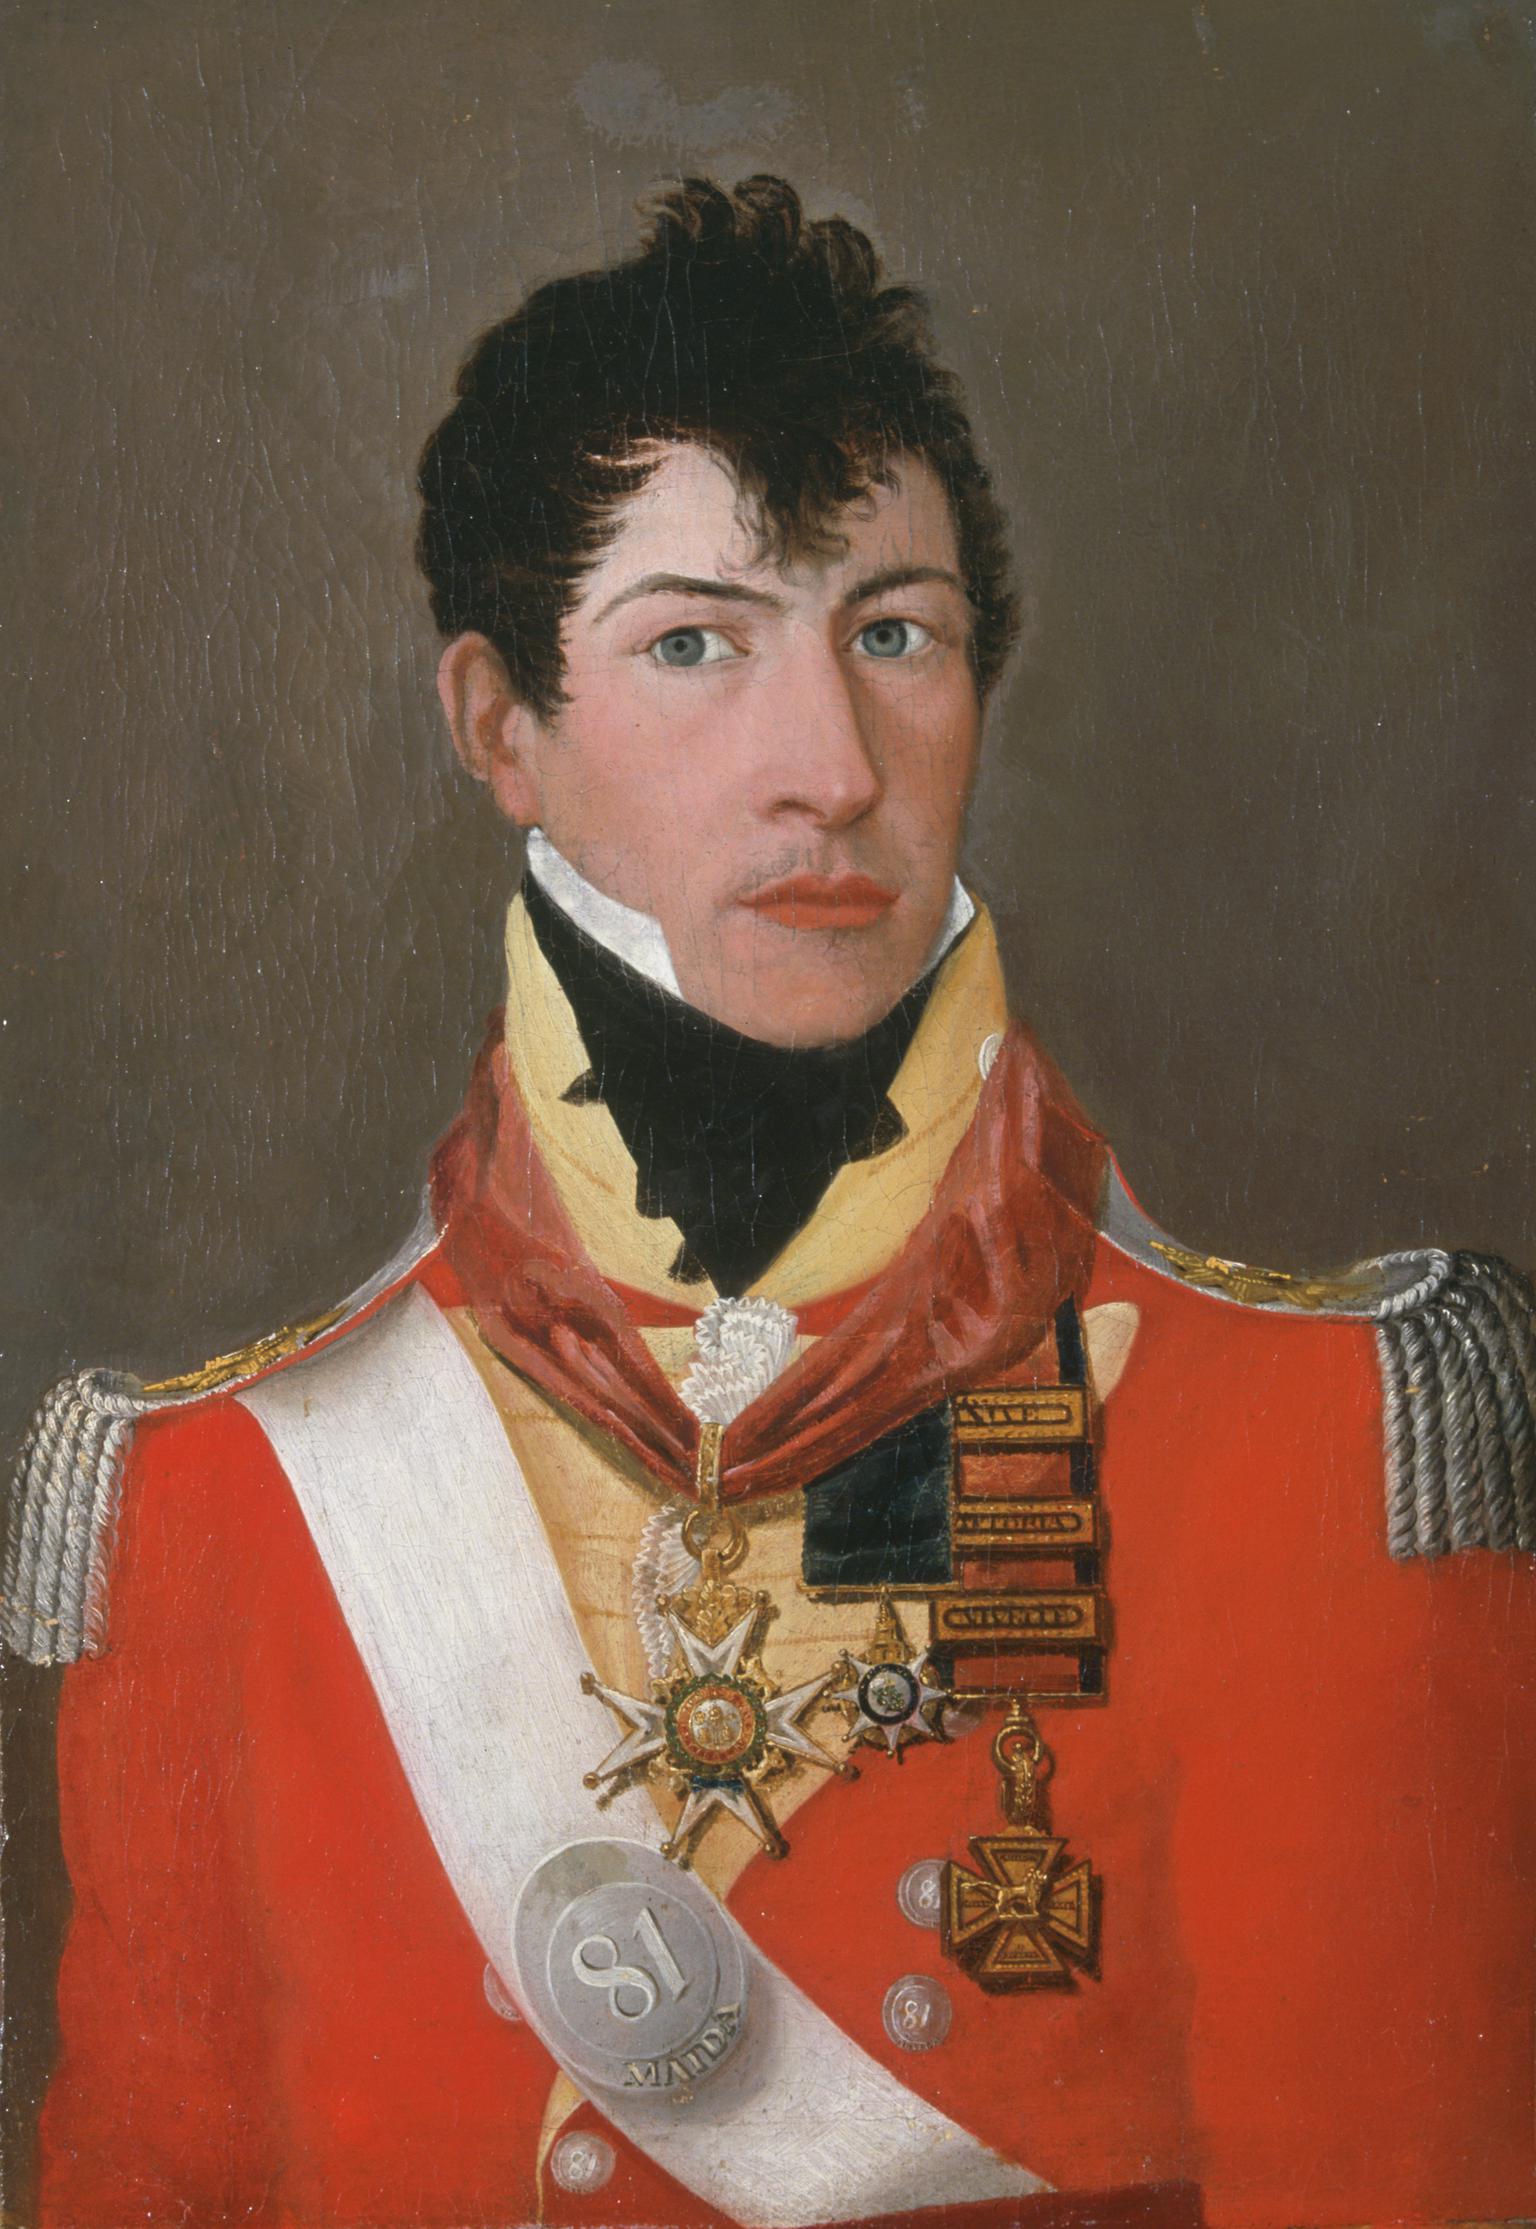 Major-General Sir Edmund Keynton Williams (1778-1850)